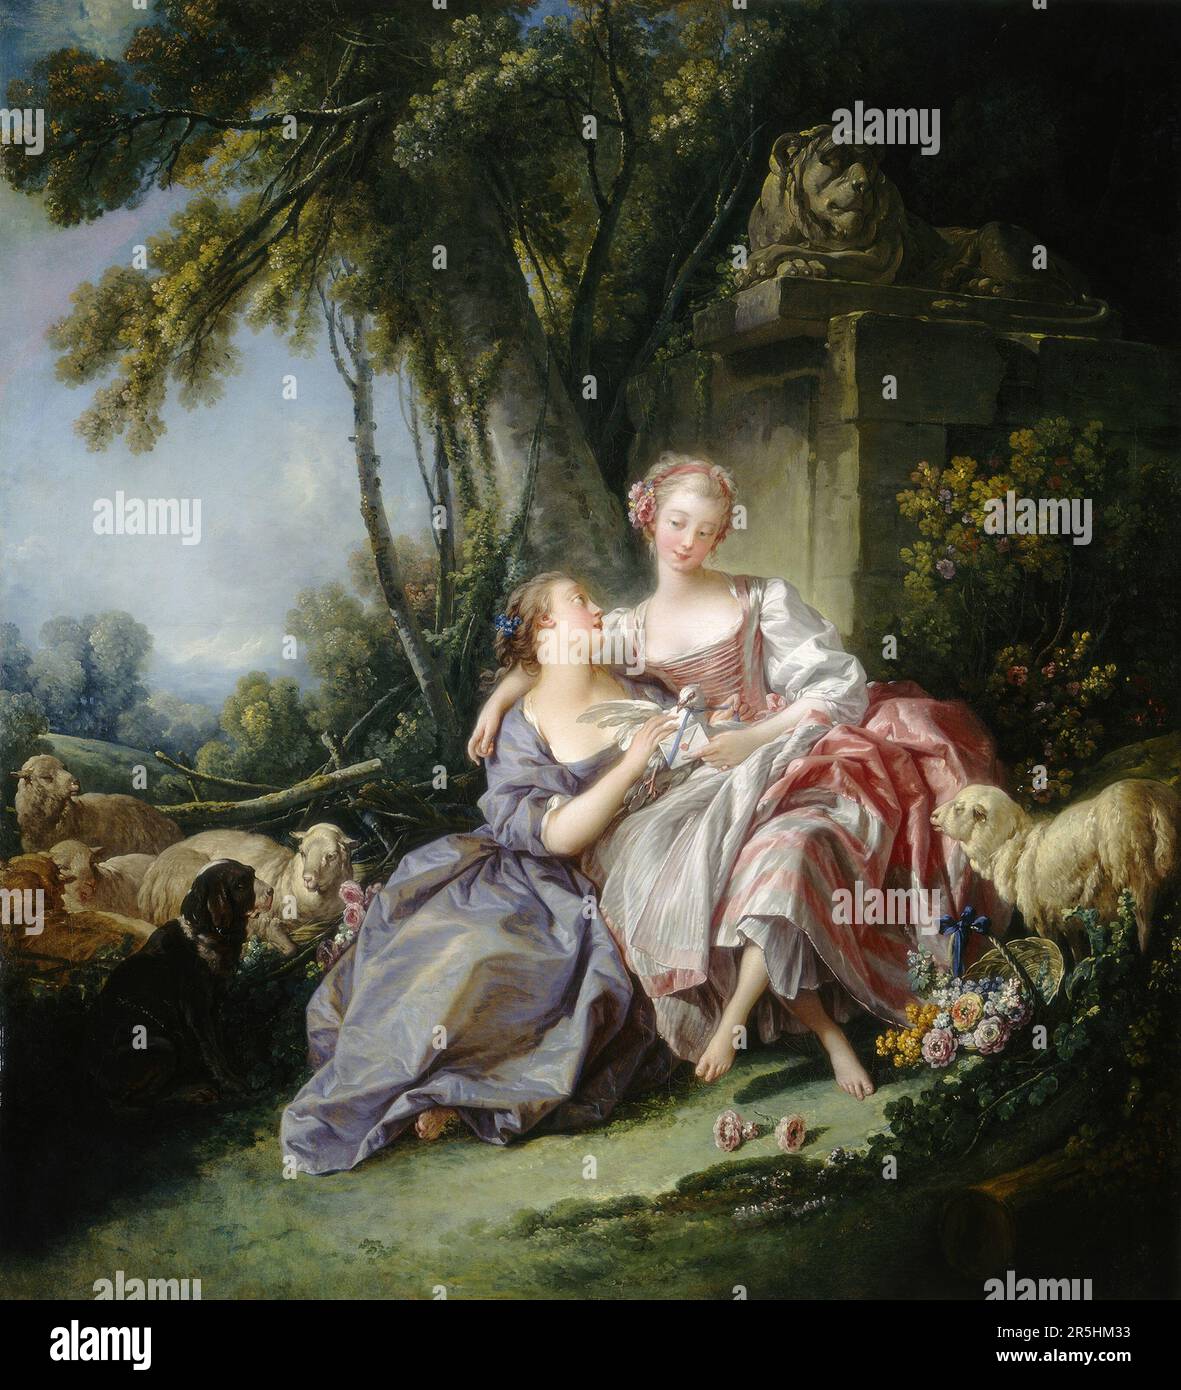 Der Liebesbrief, gemalt von Francois Bouchard 1750. Obwohl heute kaum bekannt, war Francois Boucher einer der berühmtesten Maler des 18. Jahrhunderts in Frankreich. Er malte klassische Themen im Barock- und Rokoko-Stil. Seine Schirmherrin war Madame de Pompadour, und sein Werk war so beliebt, dass er schließlich Premier Peintre du ROI (erster Maler des Königs) wurde, ein angesehener Gerichtsstand im Antiker-Regime. Stockfoto